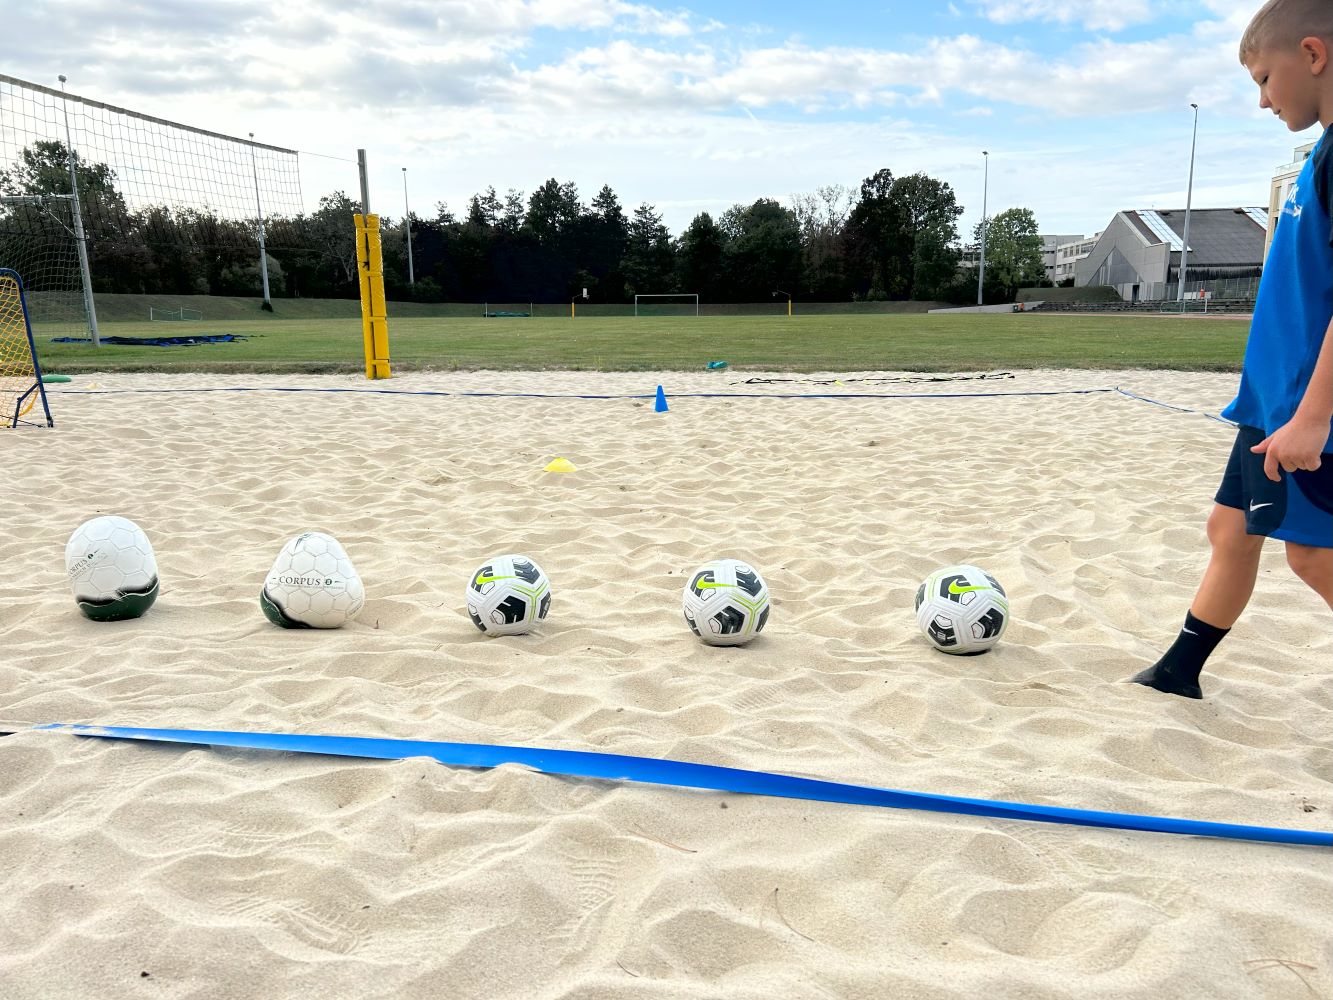 AFS Trainings- Fussballtraining auf Sand mit verschiedenen Bällen